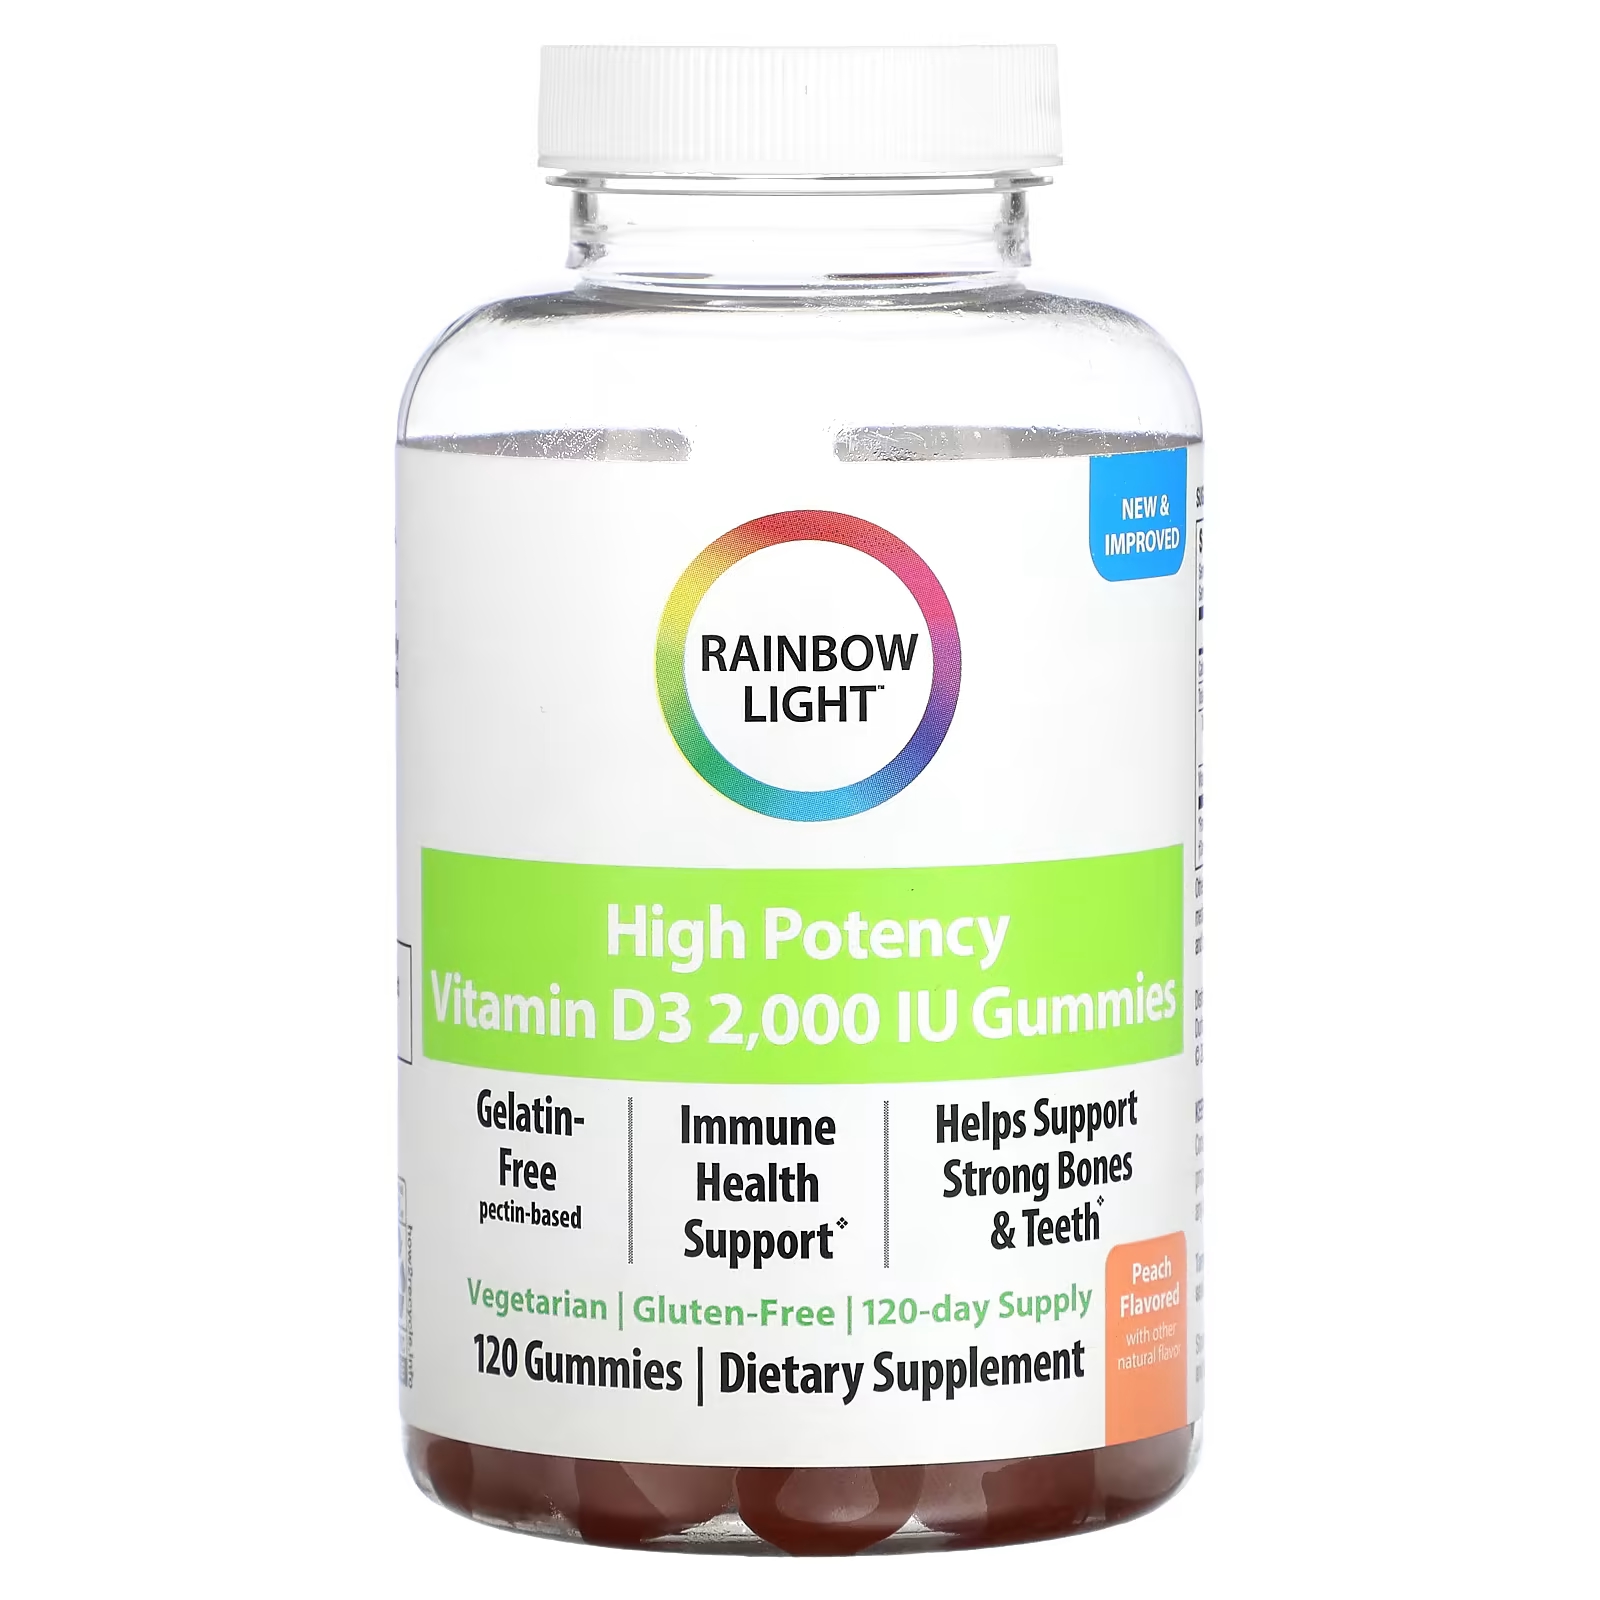 Высокоэффективный витамин D3 Rainbow Light, персик, 2000 МЕ, 120 жевательных таблеток rainbow light высокоэффективный витамин d3 персик 2000 ме 120 жевательных таблеток